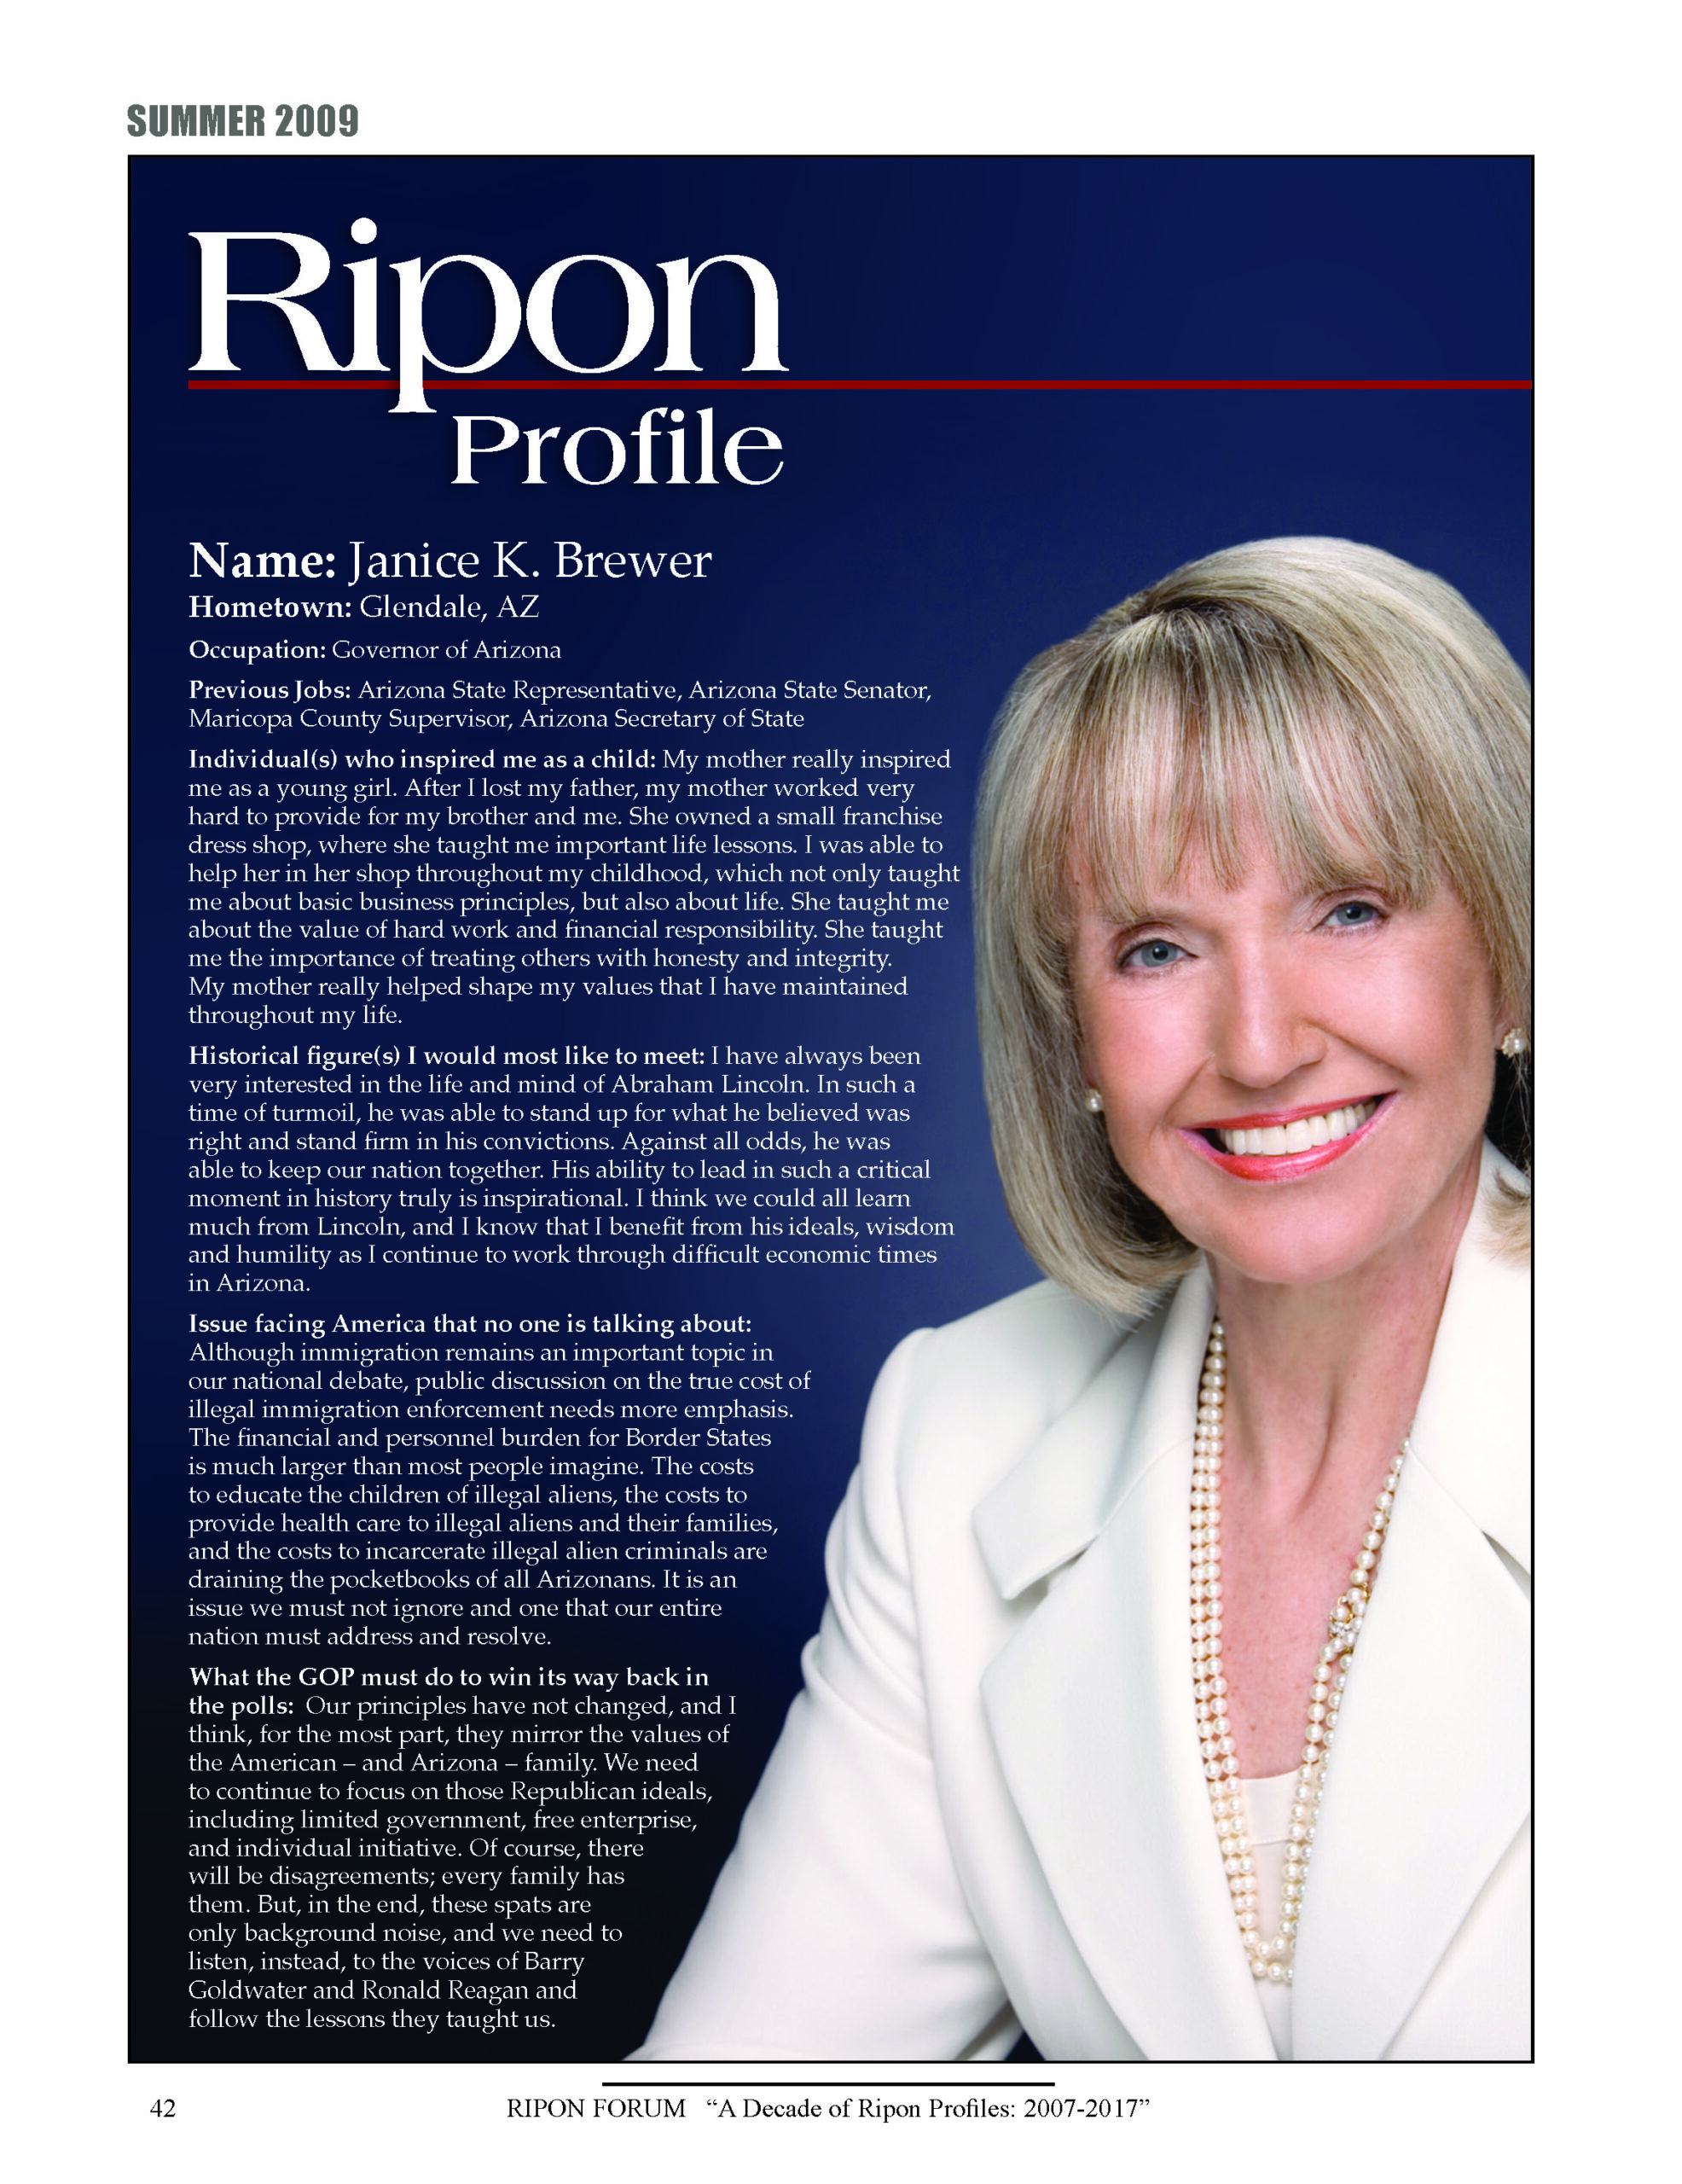 Ripon Profile of Jan Brewer